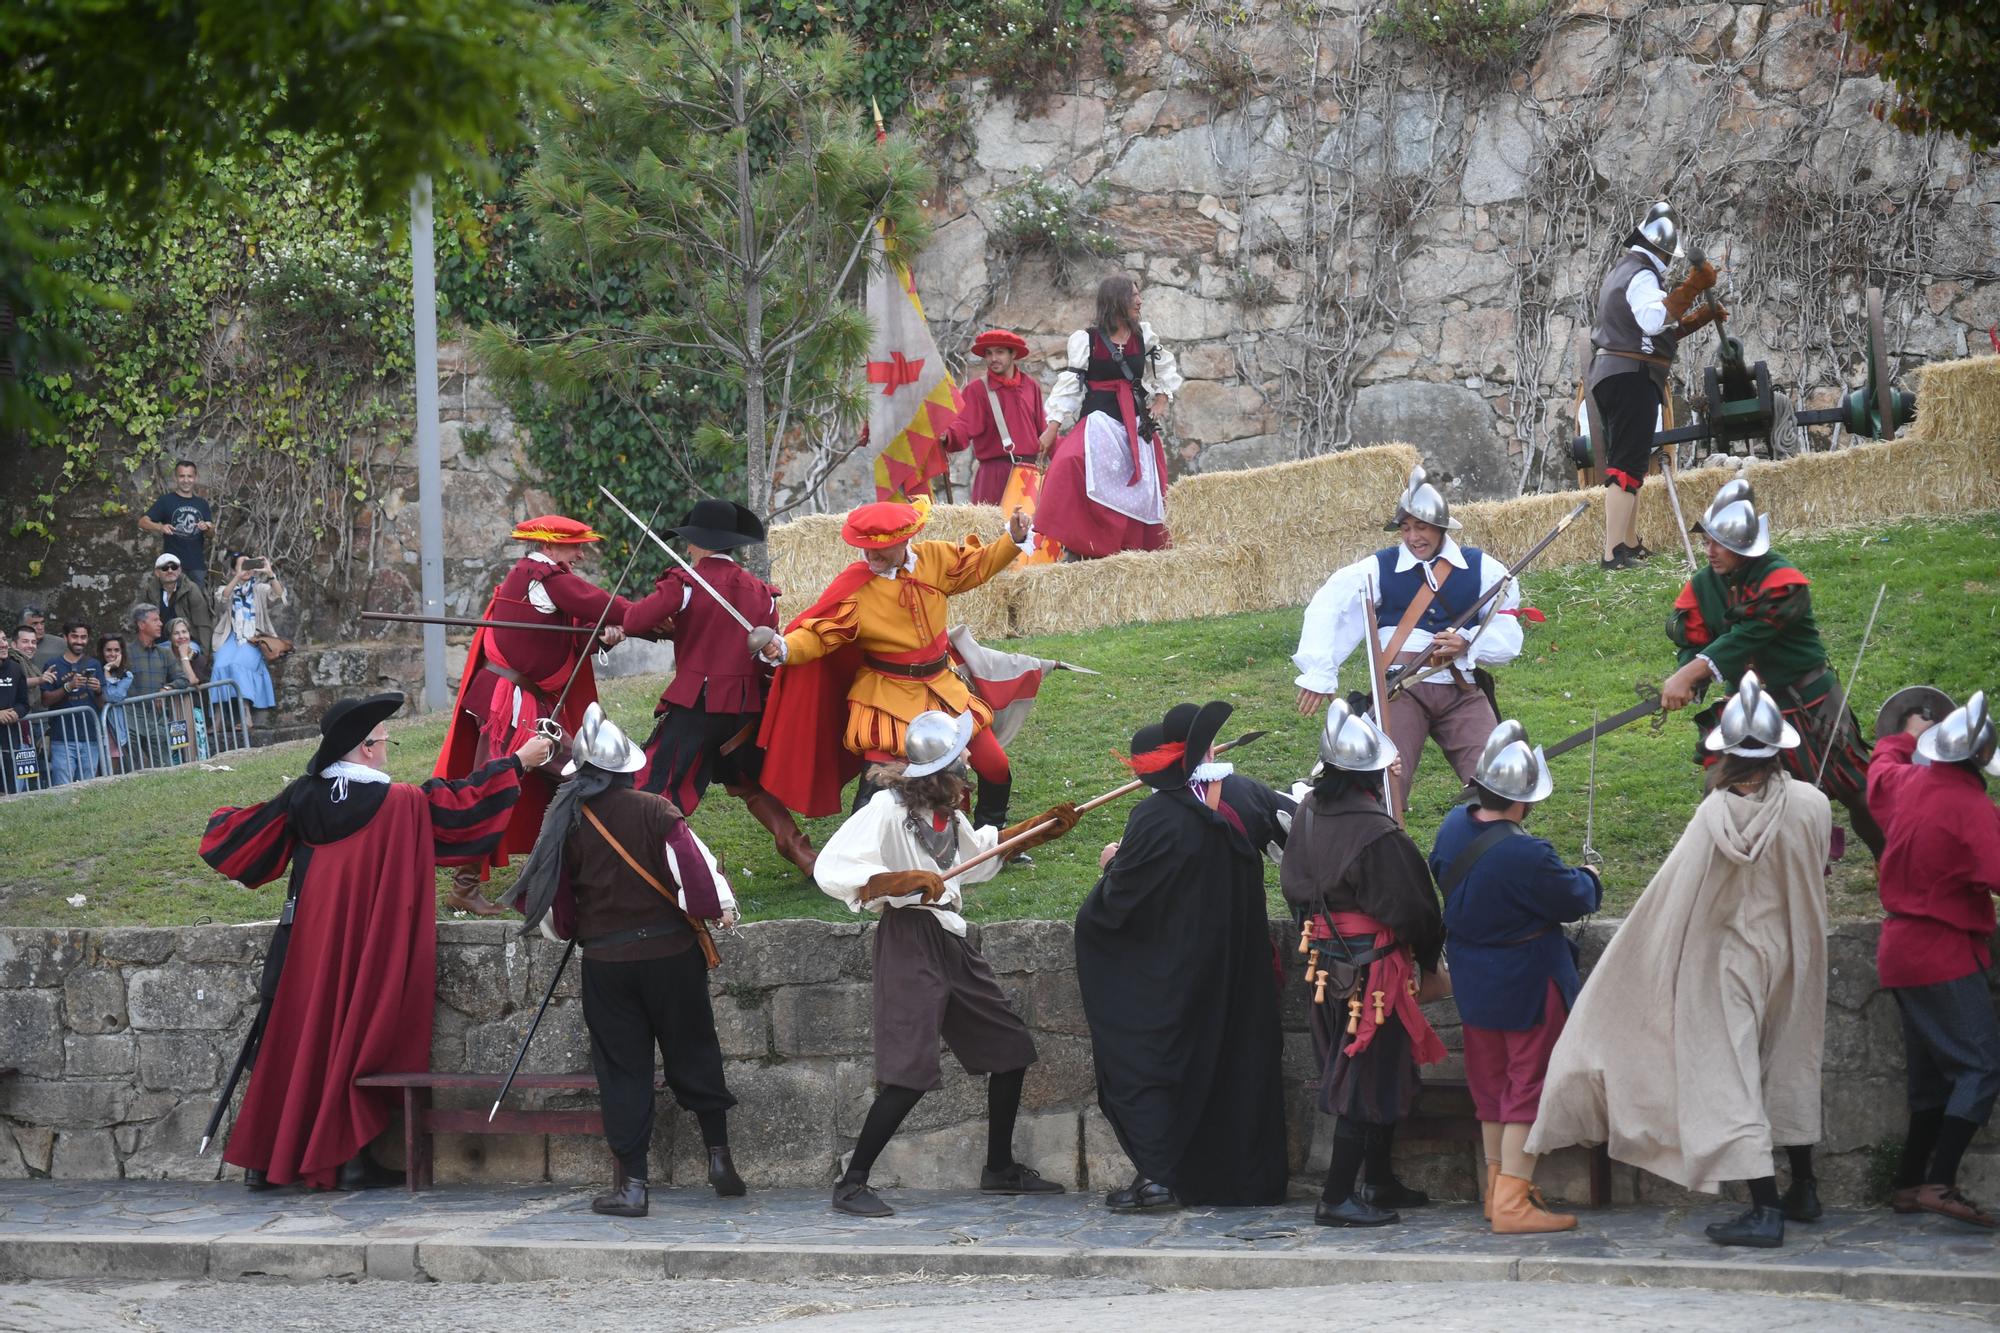 Fiestas de A Coruña: recreaciones históricas para viajar y aprender desde la Ciudad Vieja